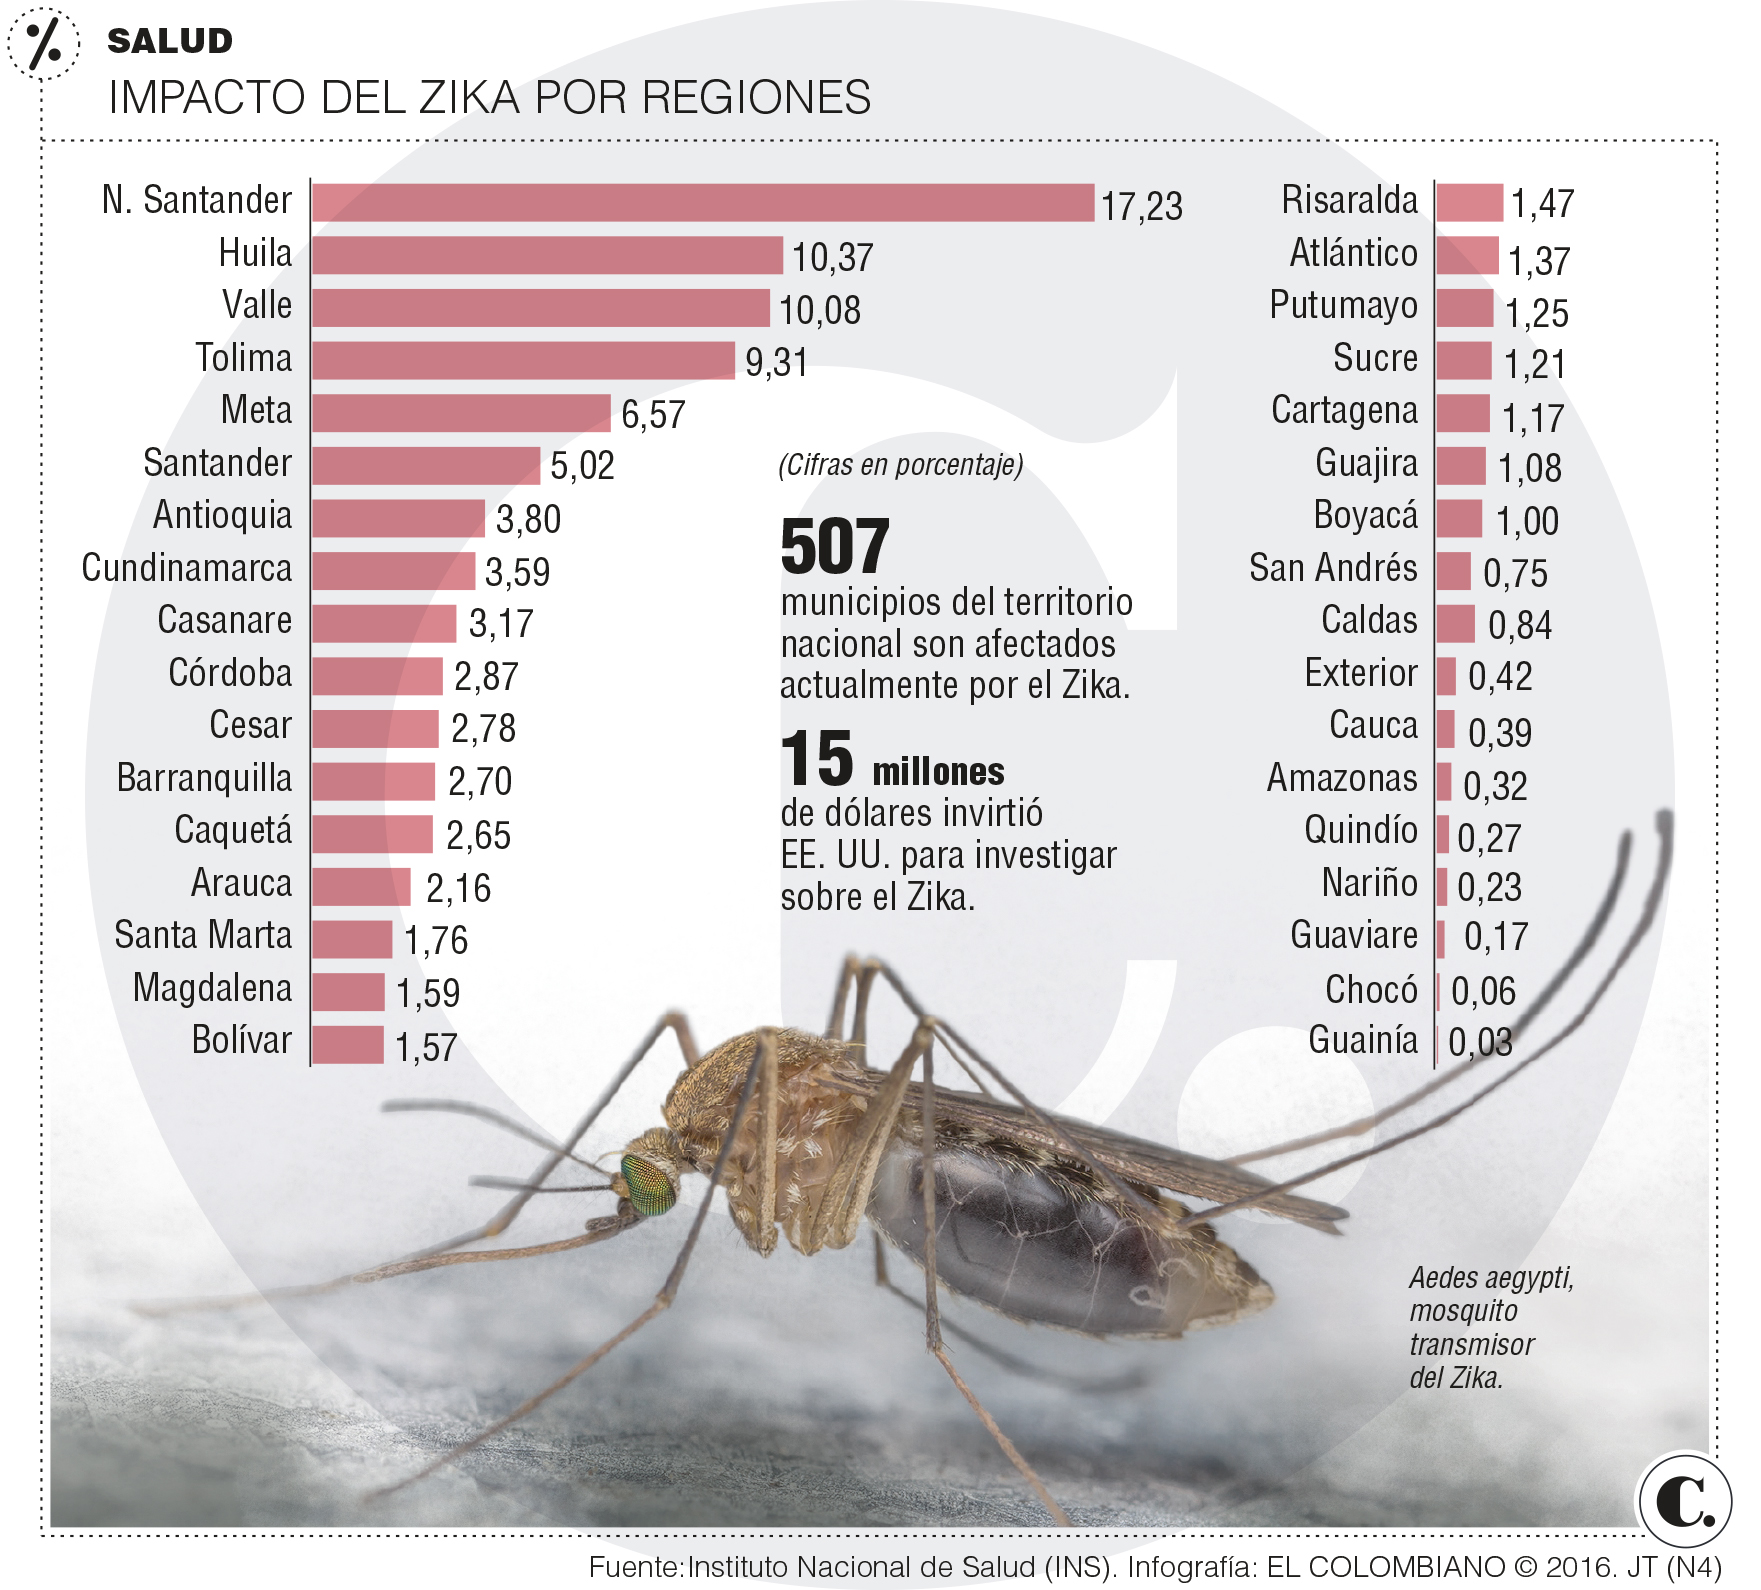 Zika bajó, pero efectos son inciertos